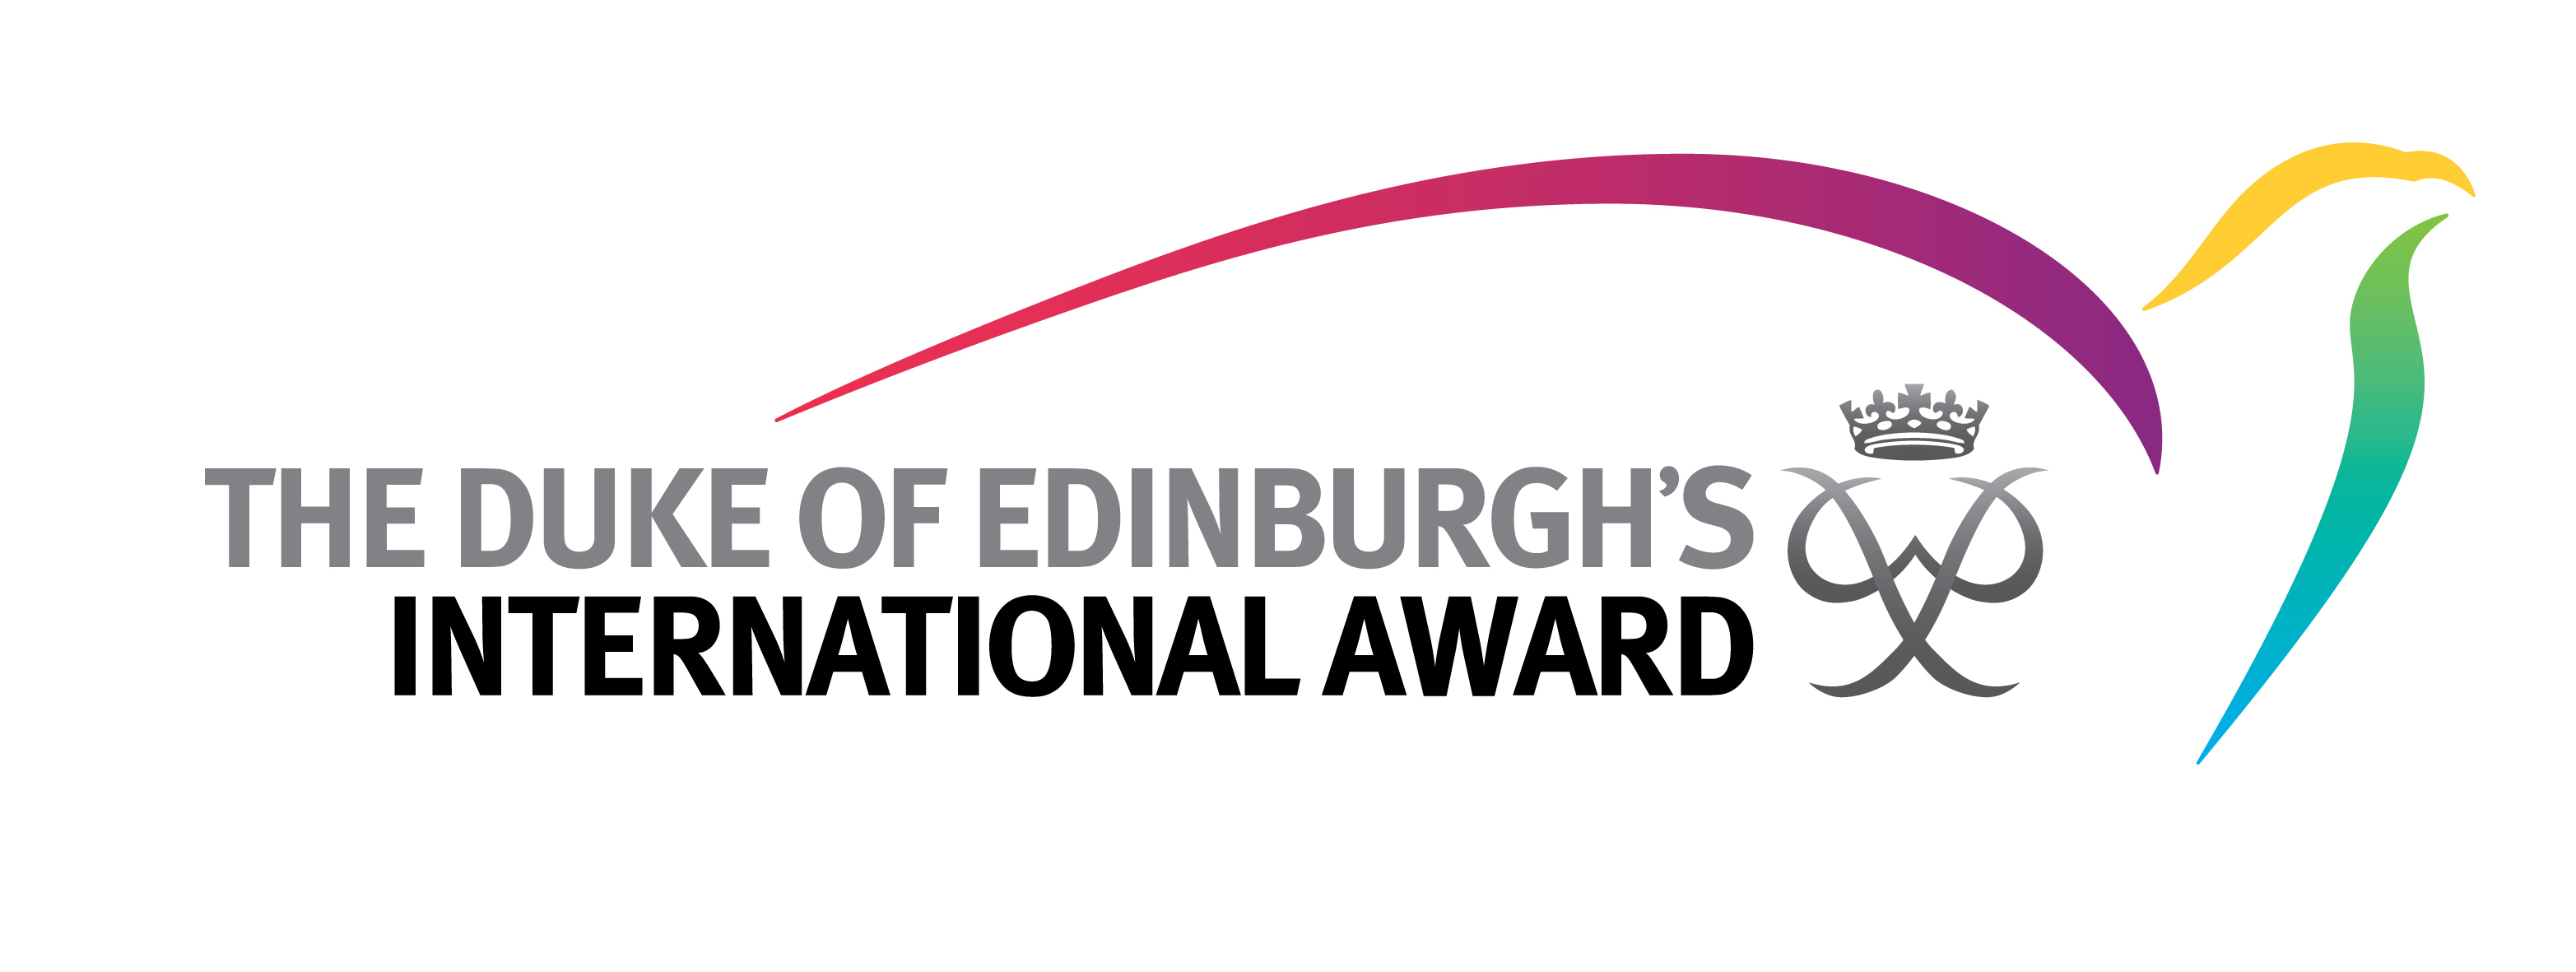 Medzinárodná cena vojvodu z Edinburghu